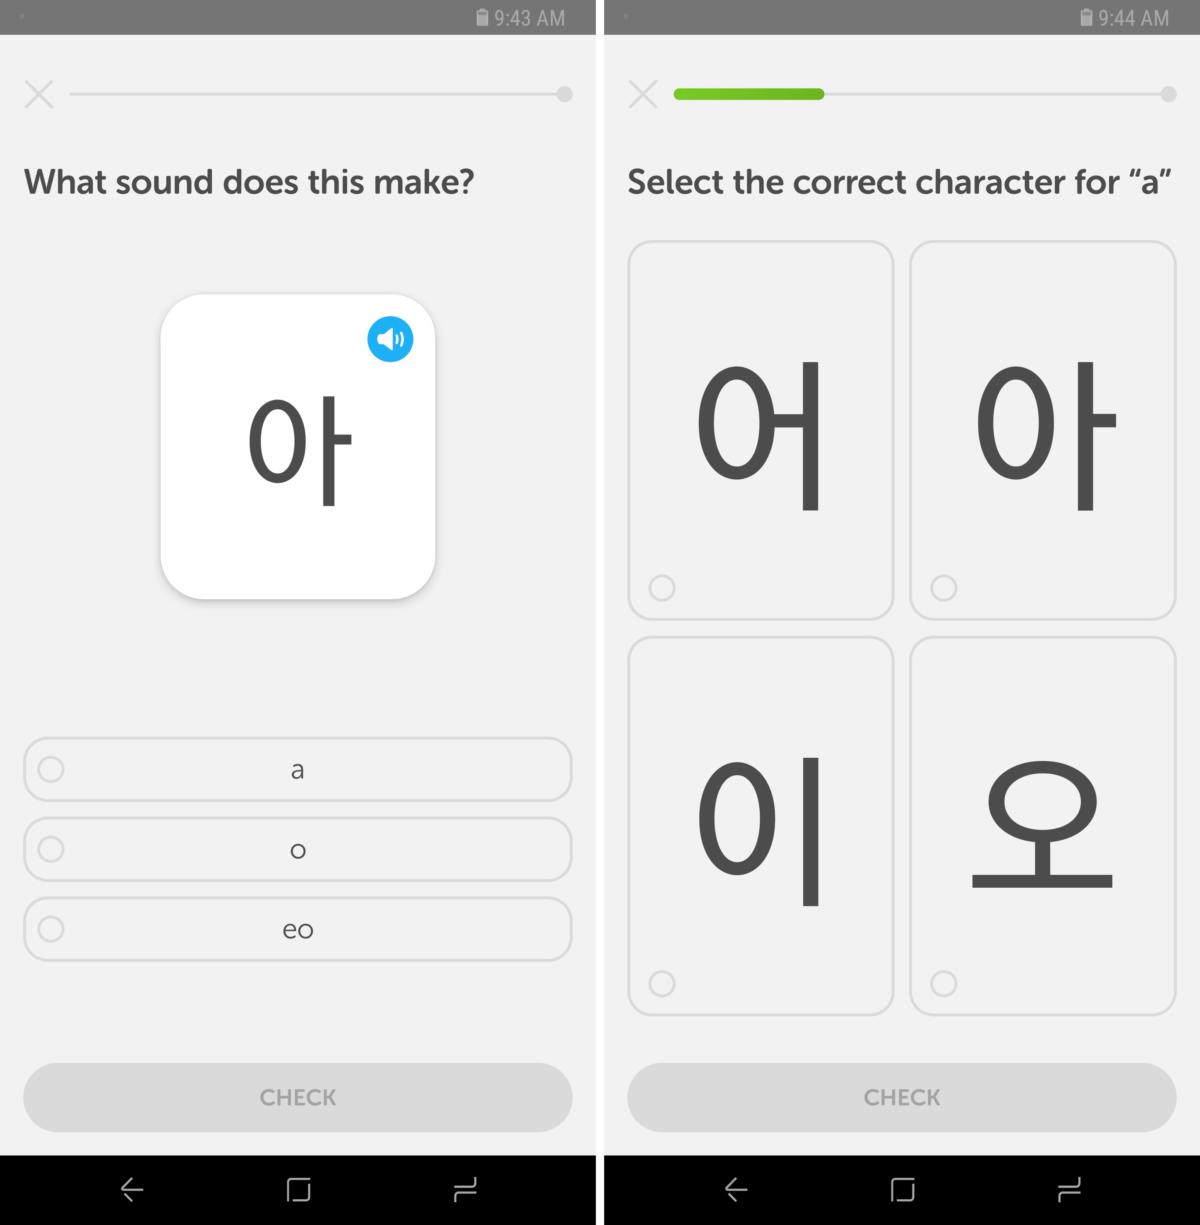 duolingo for learning korean